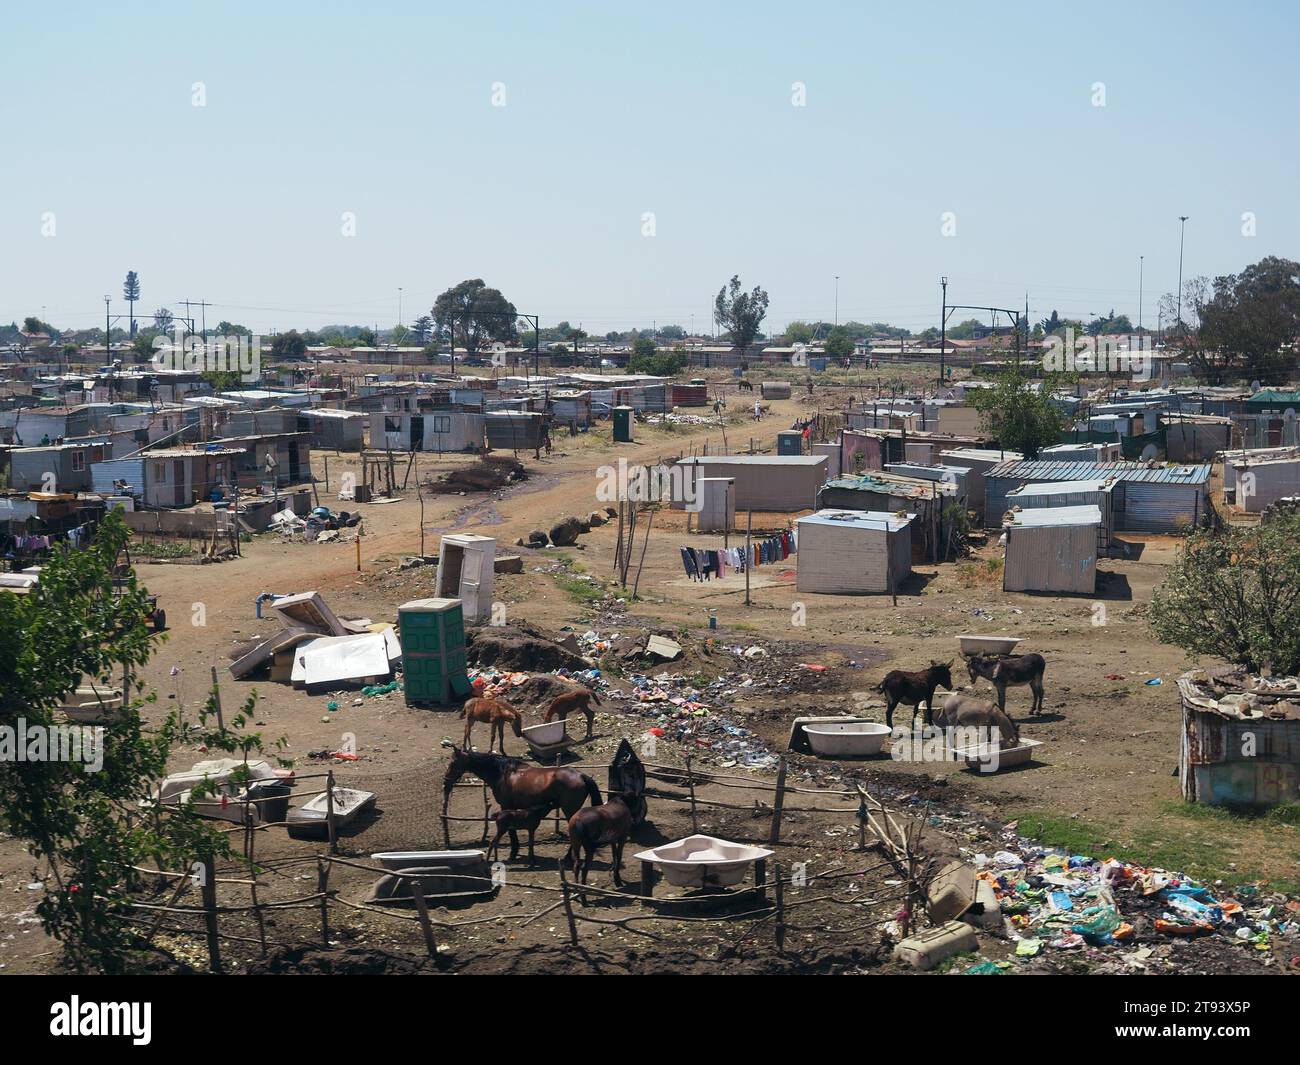 Straßenszene in Soweto Township, Provinz Gauteng, Südafrika mit viel Müll, kleinen Hütten, Pferden und Eseln. Stockfoto